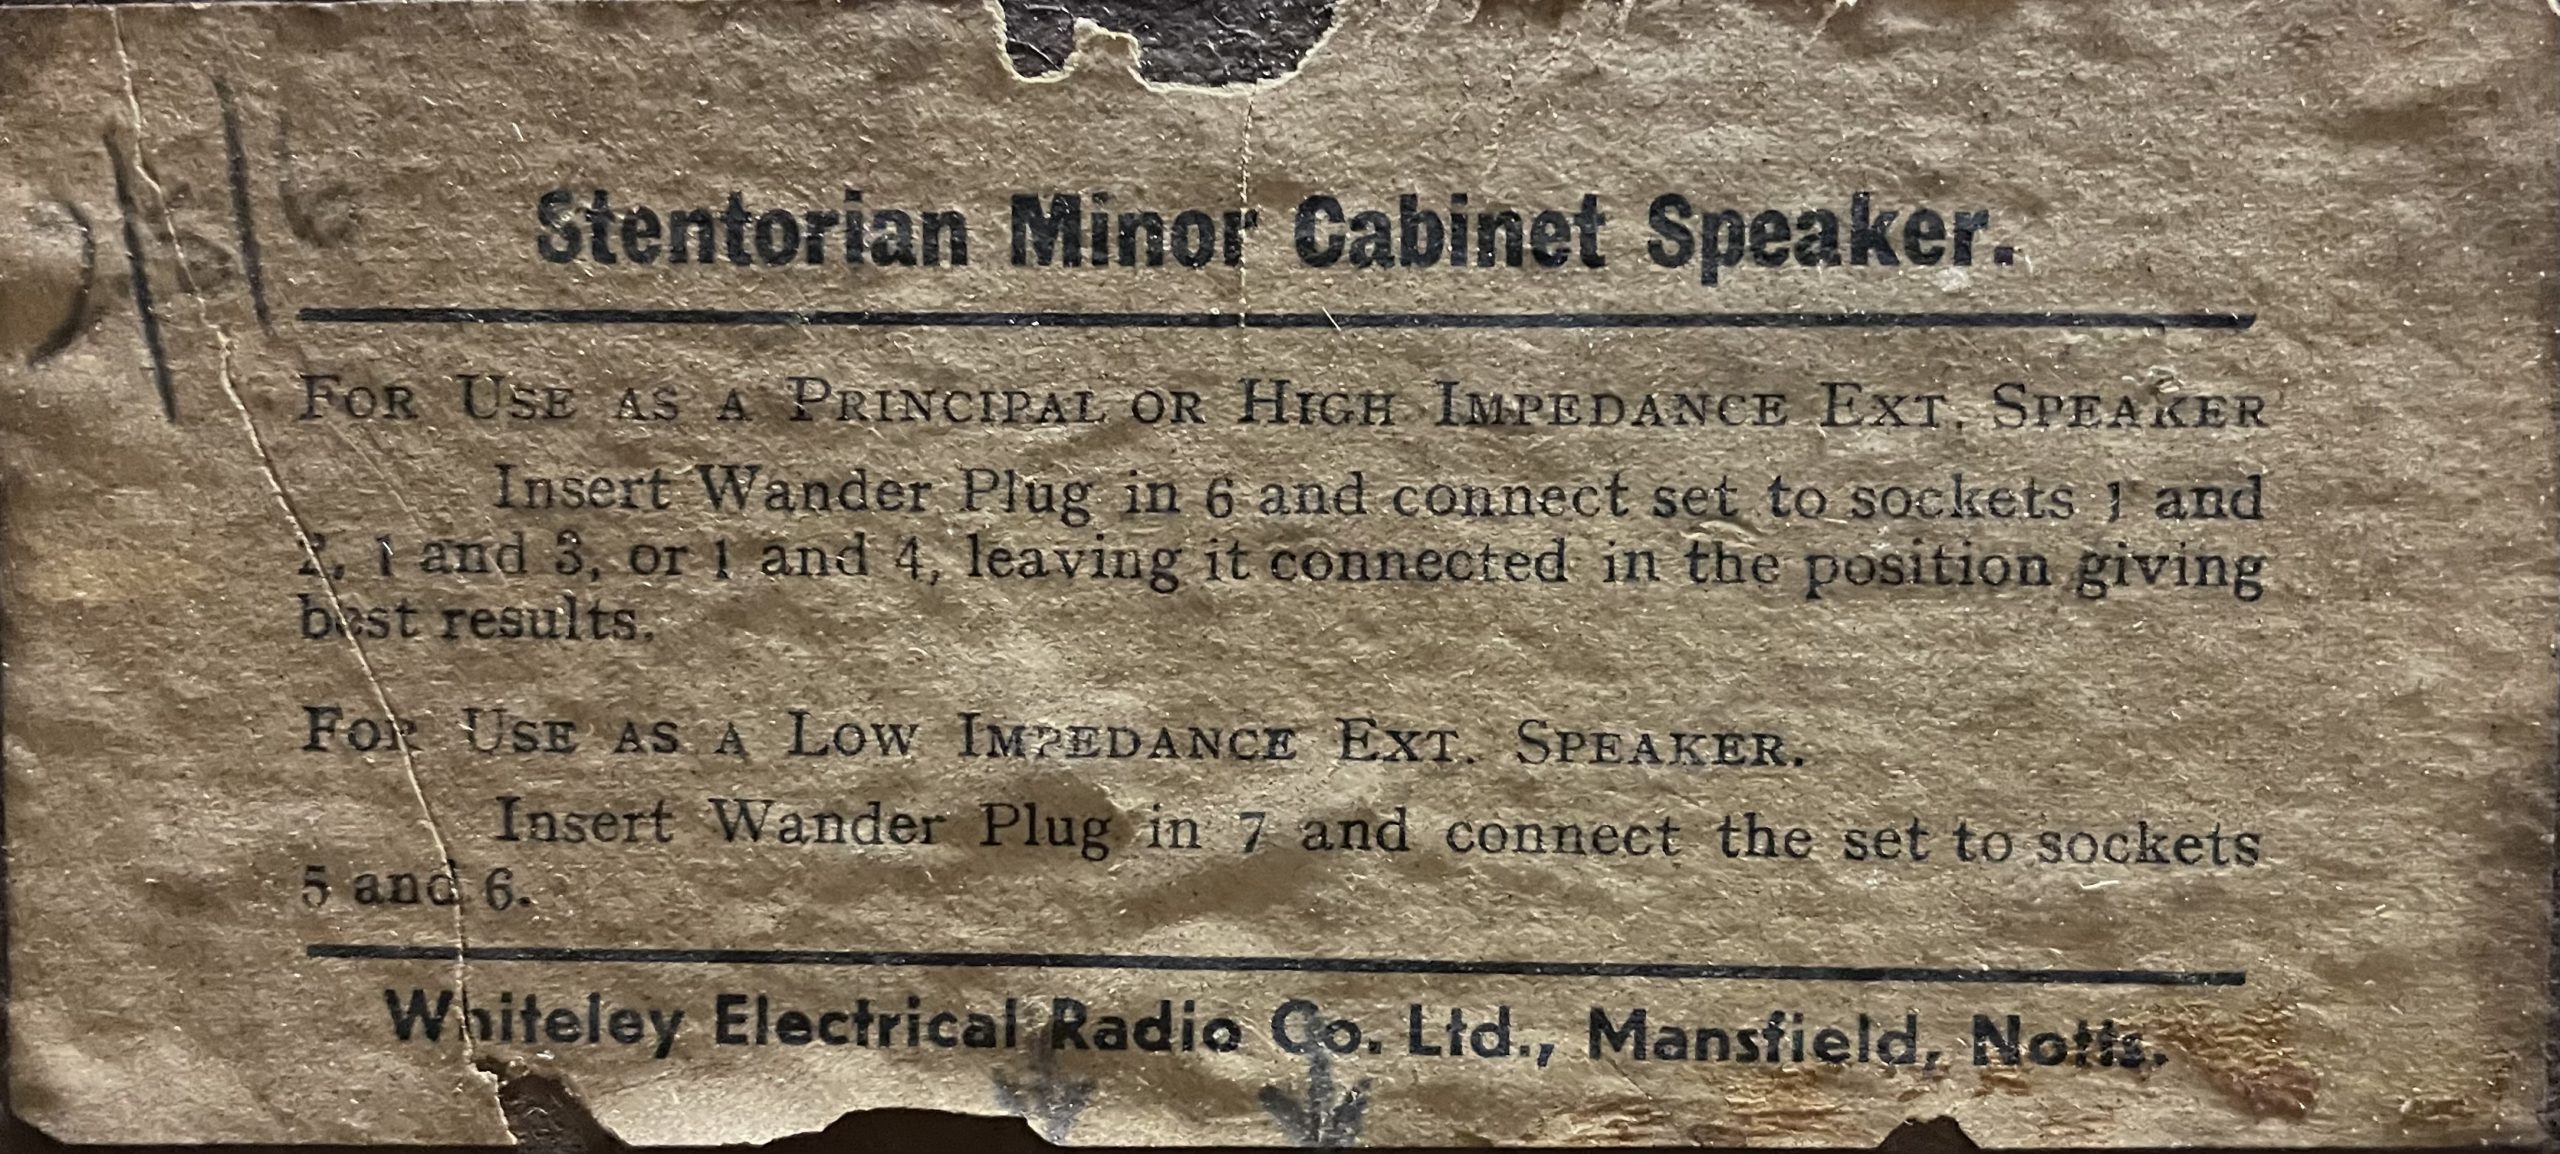 Stentorian Minor Cabinet Speaker